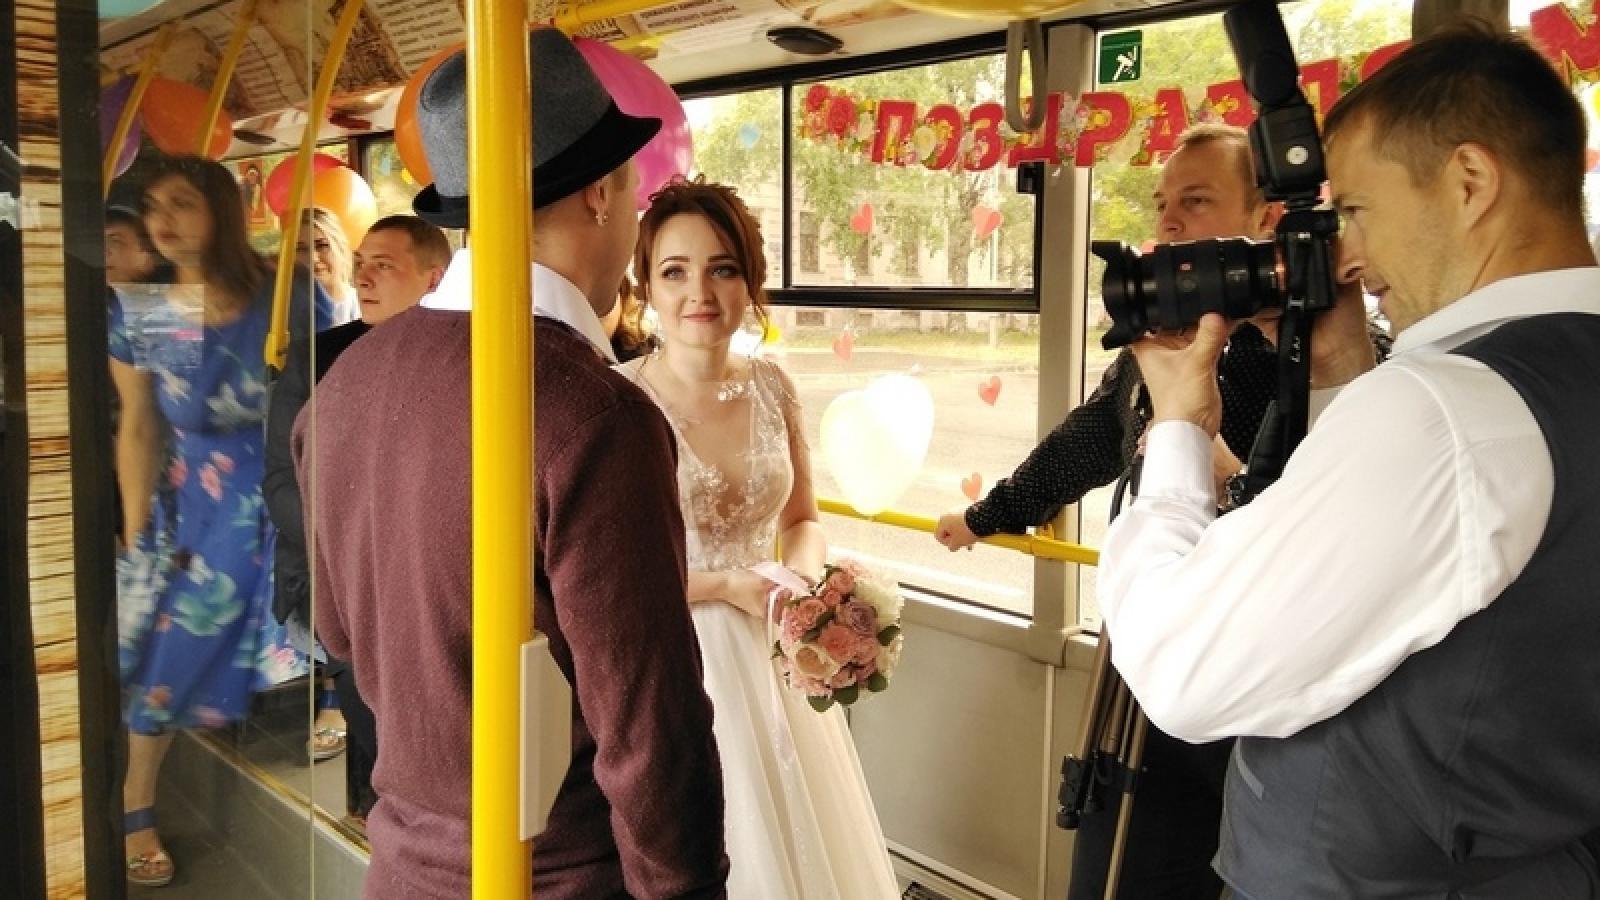 Череповецкие молодожены отпраздновали свадьбу в автобусе